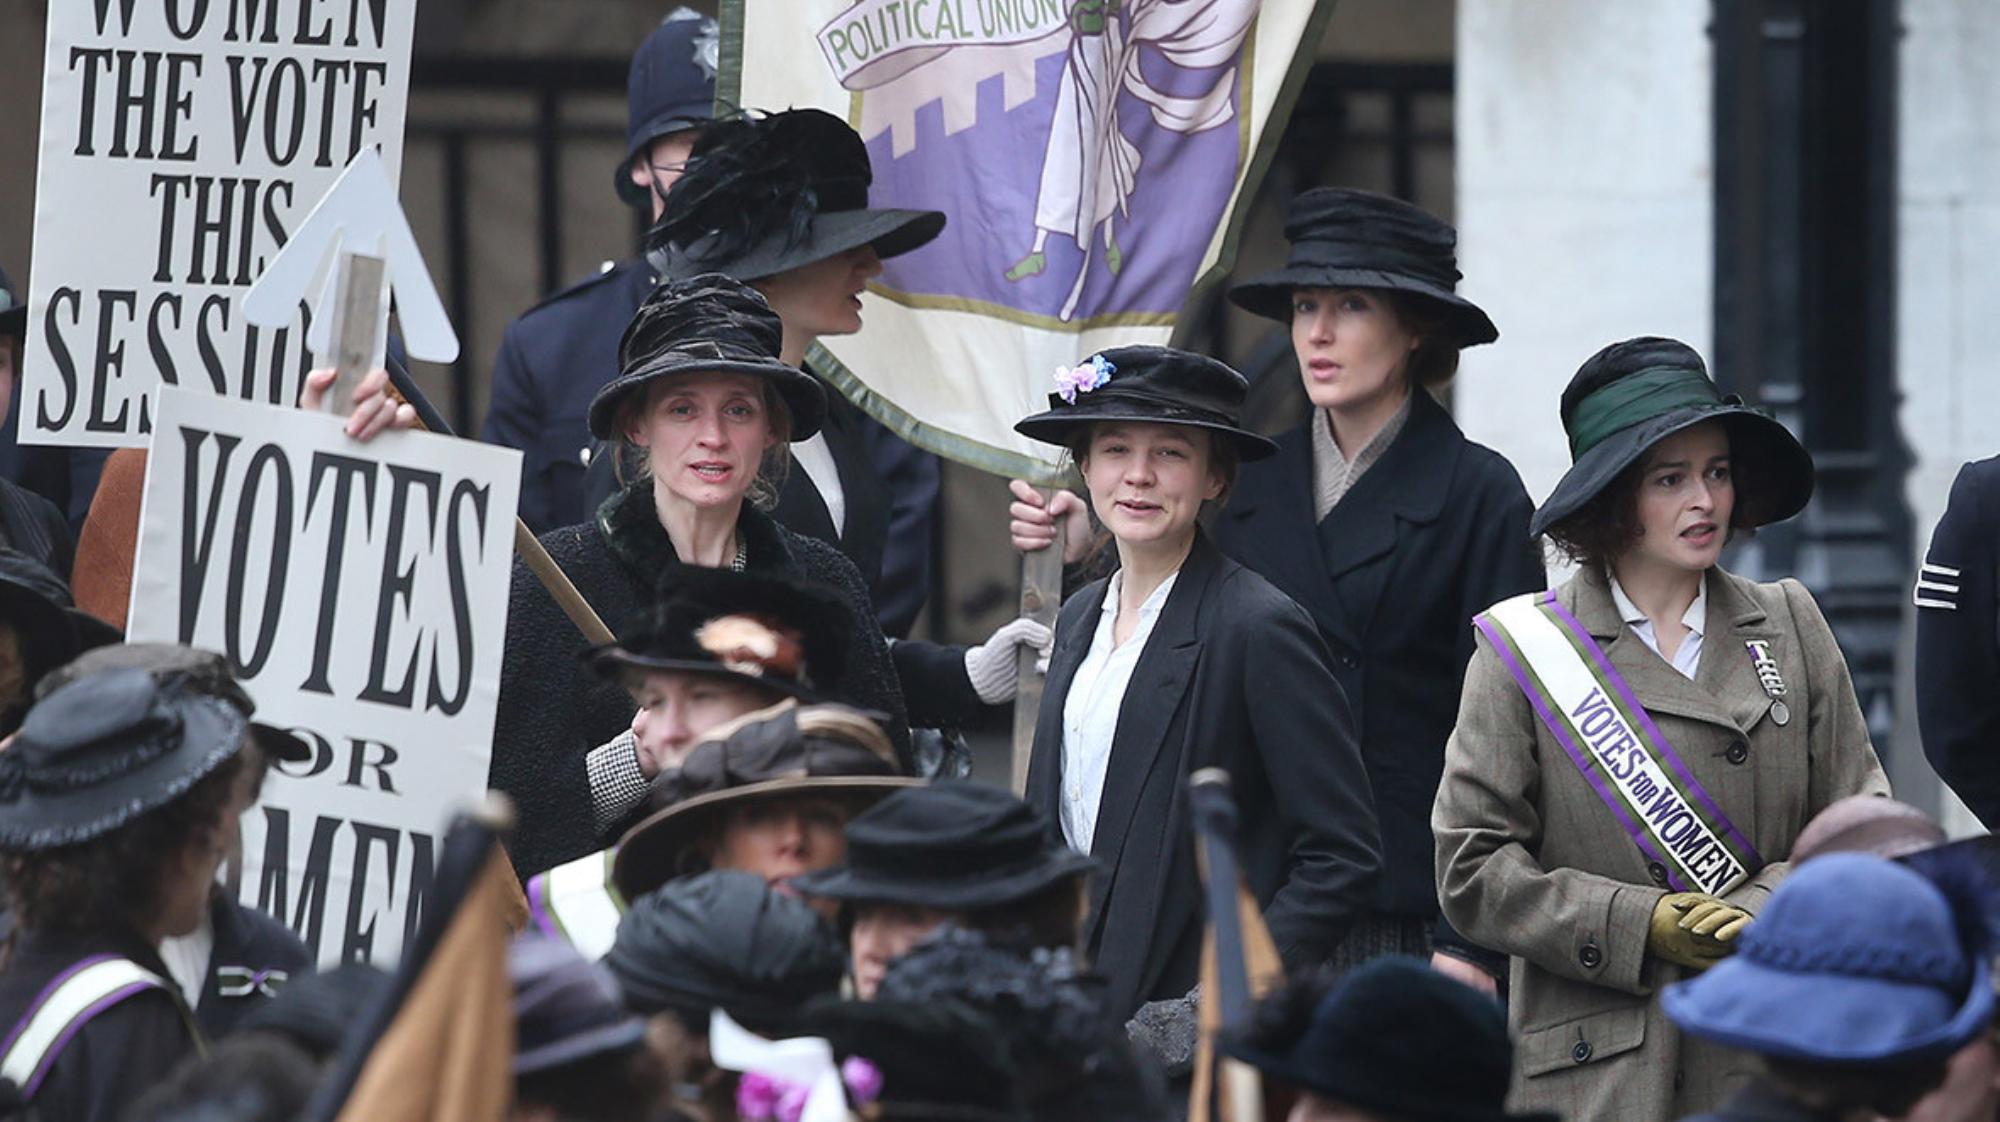 Les suffragettes